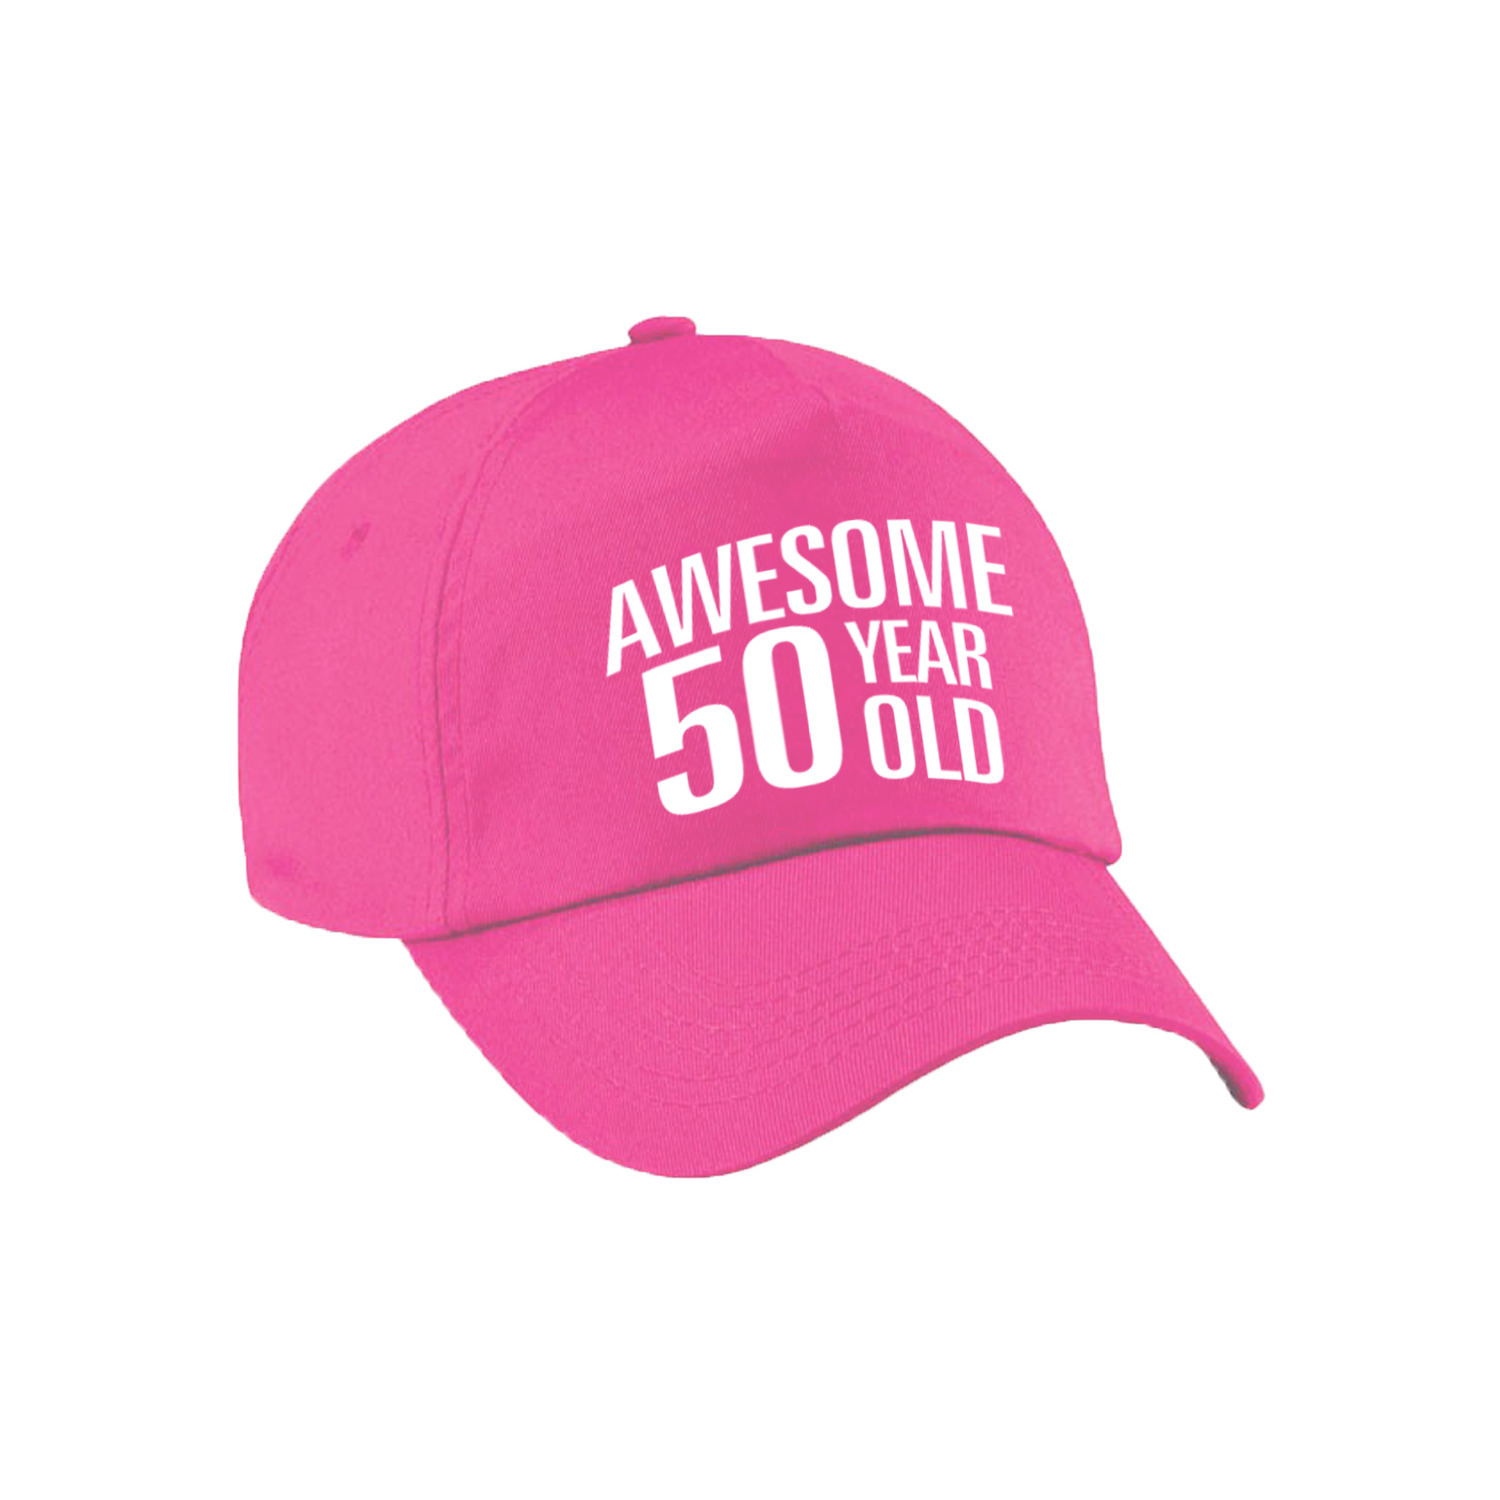 Awesome 50 year old verjaardag pet / cap roze voor dames en heren